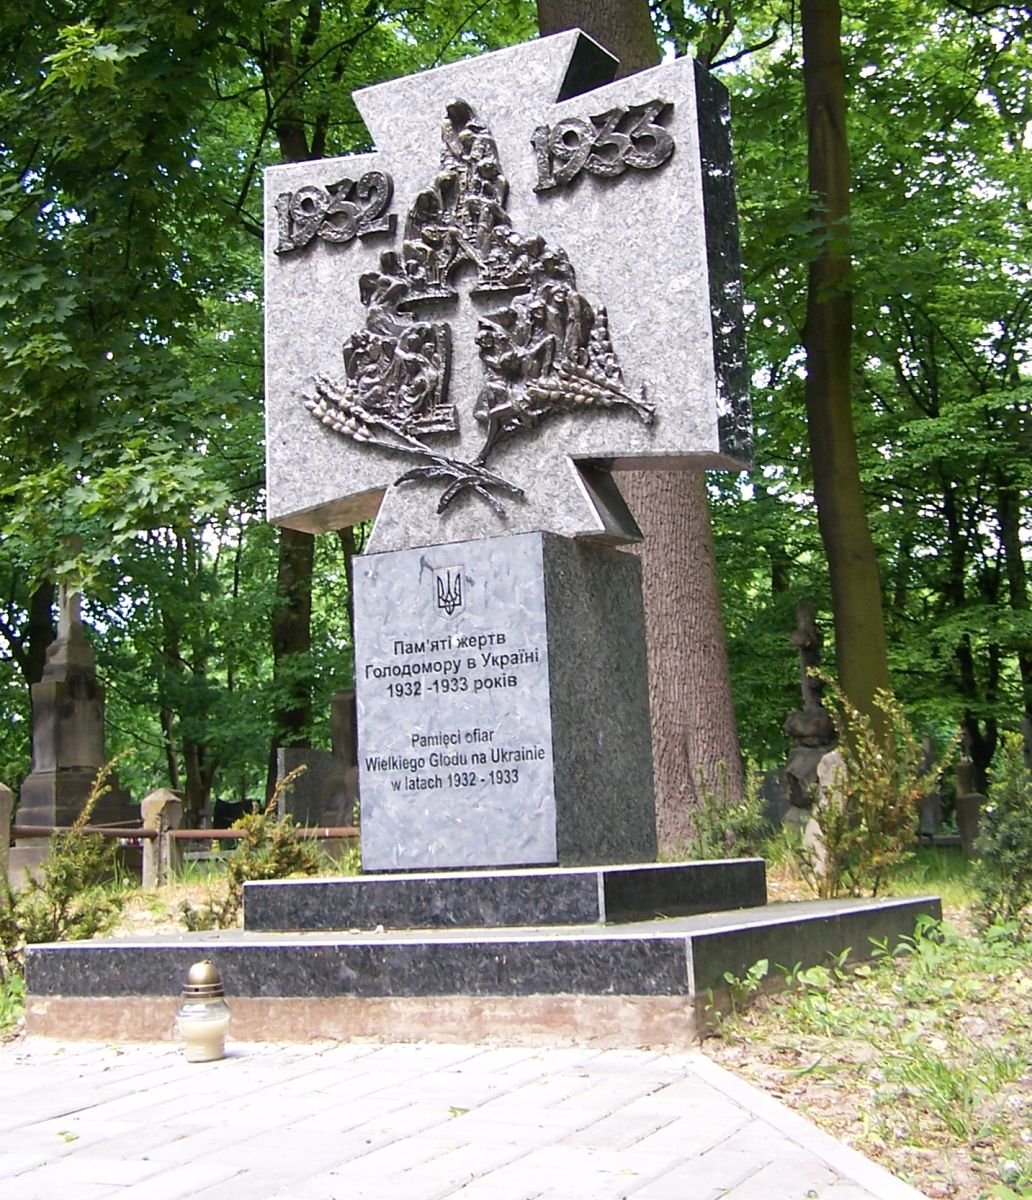 Номер фотографии 1 : Памятник жертвам голодомора на Украине : православное кладбище : фотограф Galeriafart (https://ru.wikipedia.org)